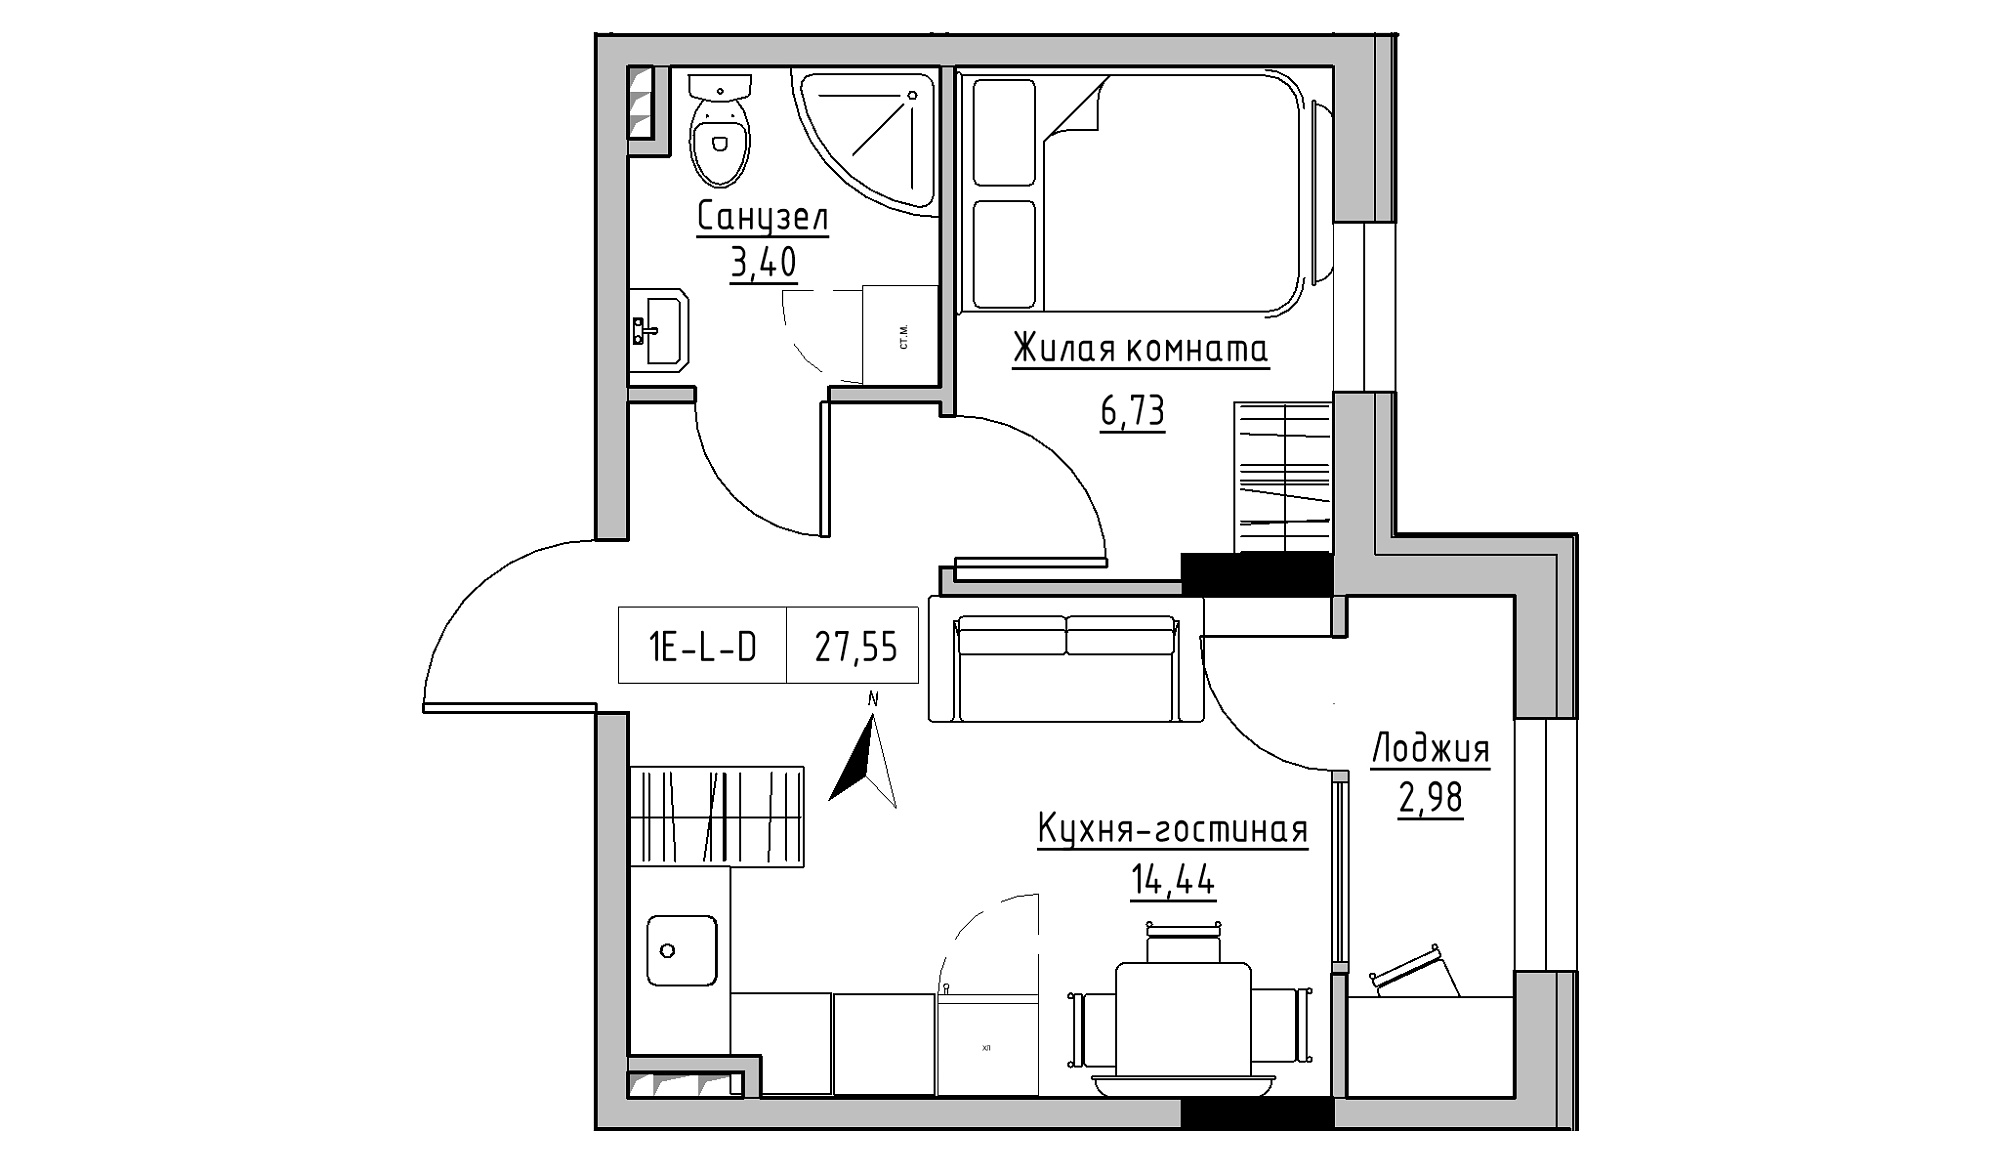 Планування 1-к квартира площею 27.55м2, KS-025-02/0001.